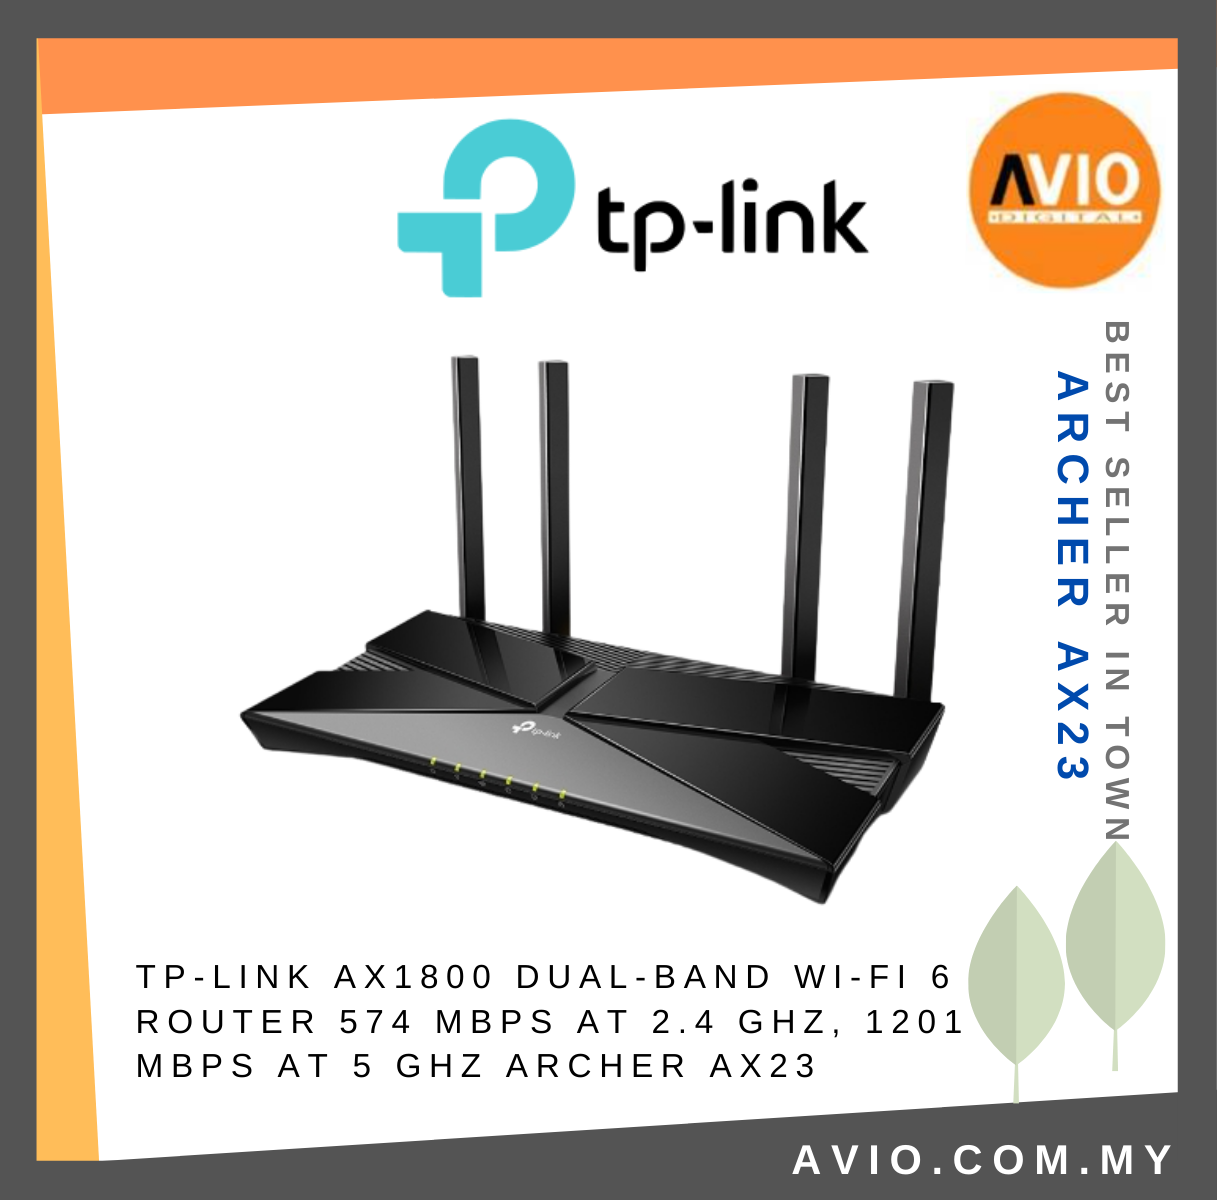 TP-LINK Tplink Archer AX23 AX1800 Dual Band 2.4GHz 5GHz High Speed Wifi 6  Router 5x Gigabit Port 4× Antenna Archer AX23 TP-LINK Johor Bahru (JB),  Kempas, Johor Jaya Supplier, Suppliers, Supply, Supplies